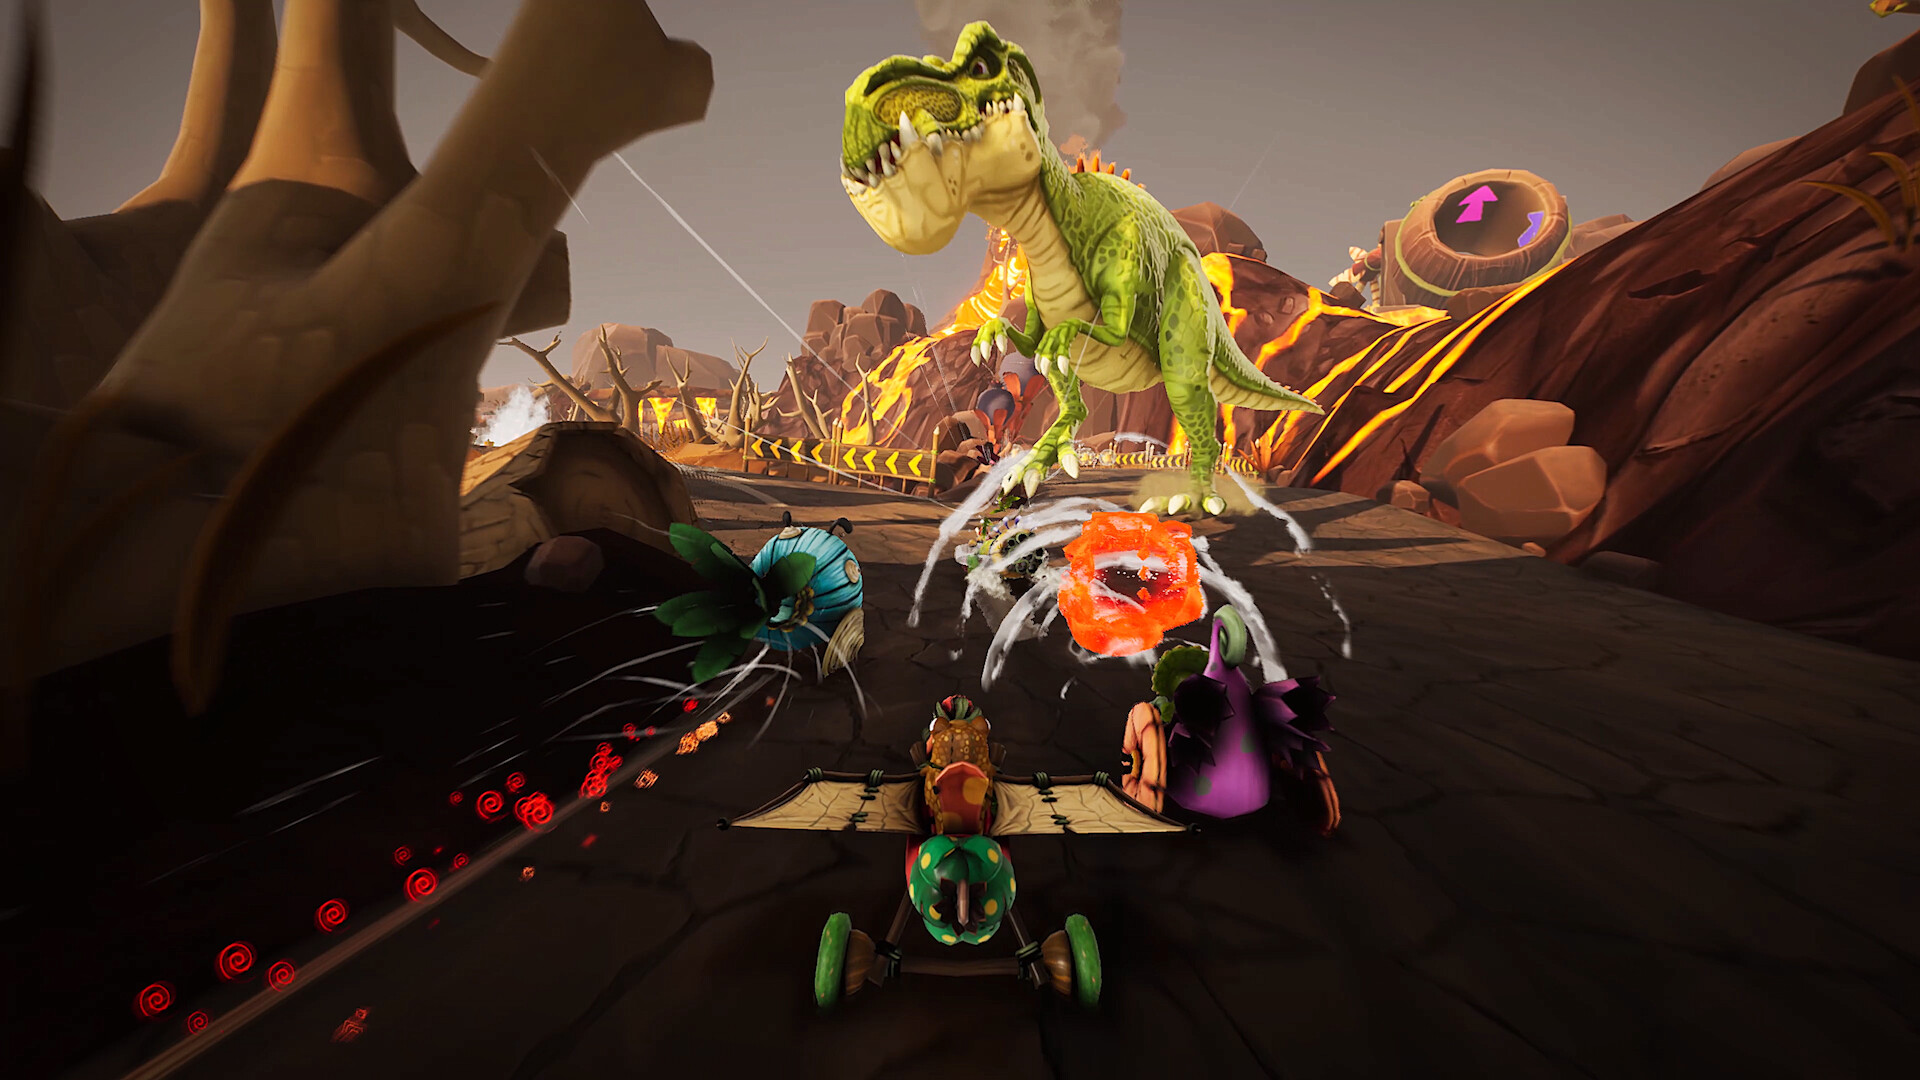 Gigantosaurus: Dino Kart on Steam